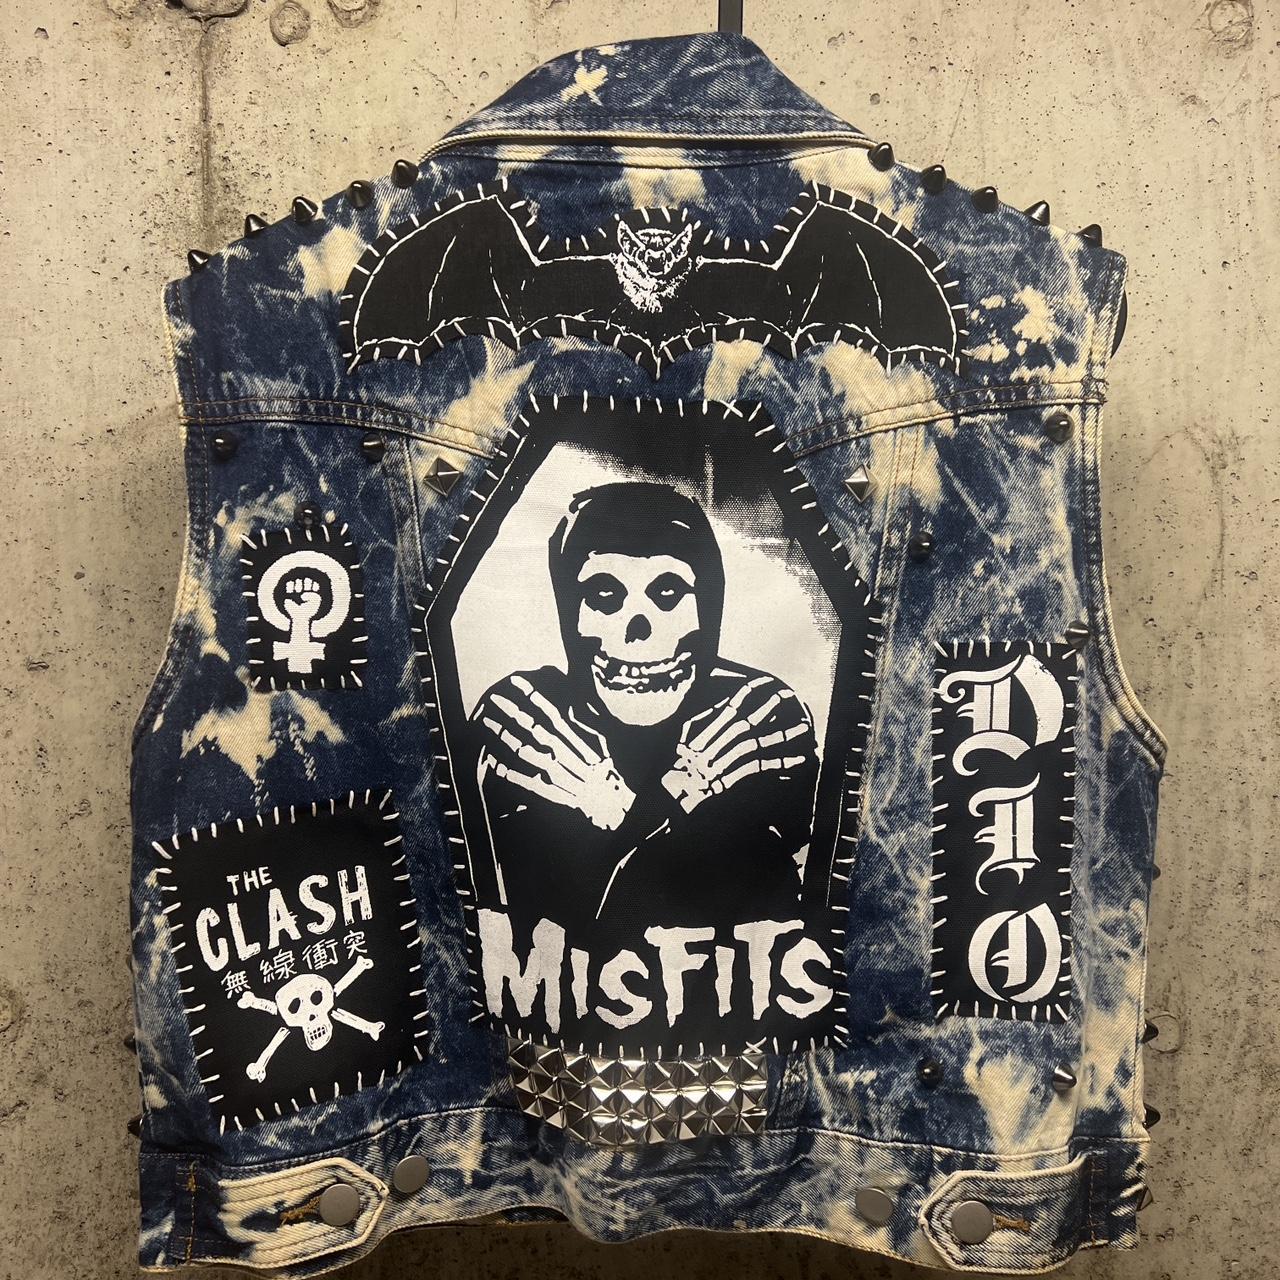 handmade misfits patch 3.5” by 3” #misfits - Depop